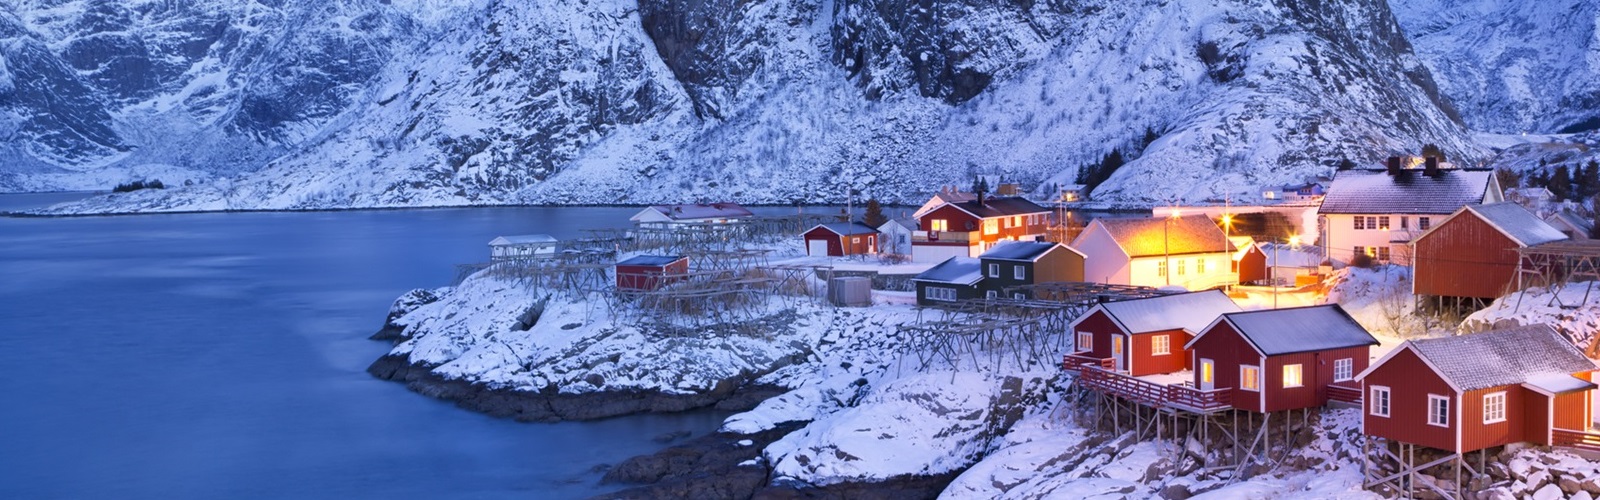 norwegen im winter